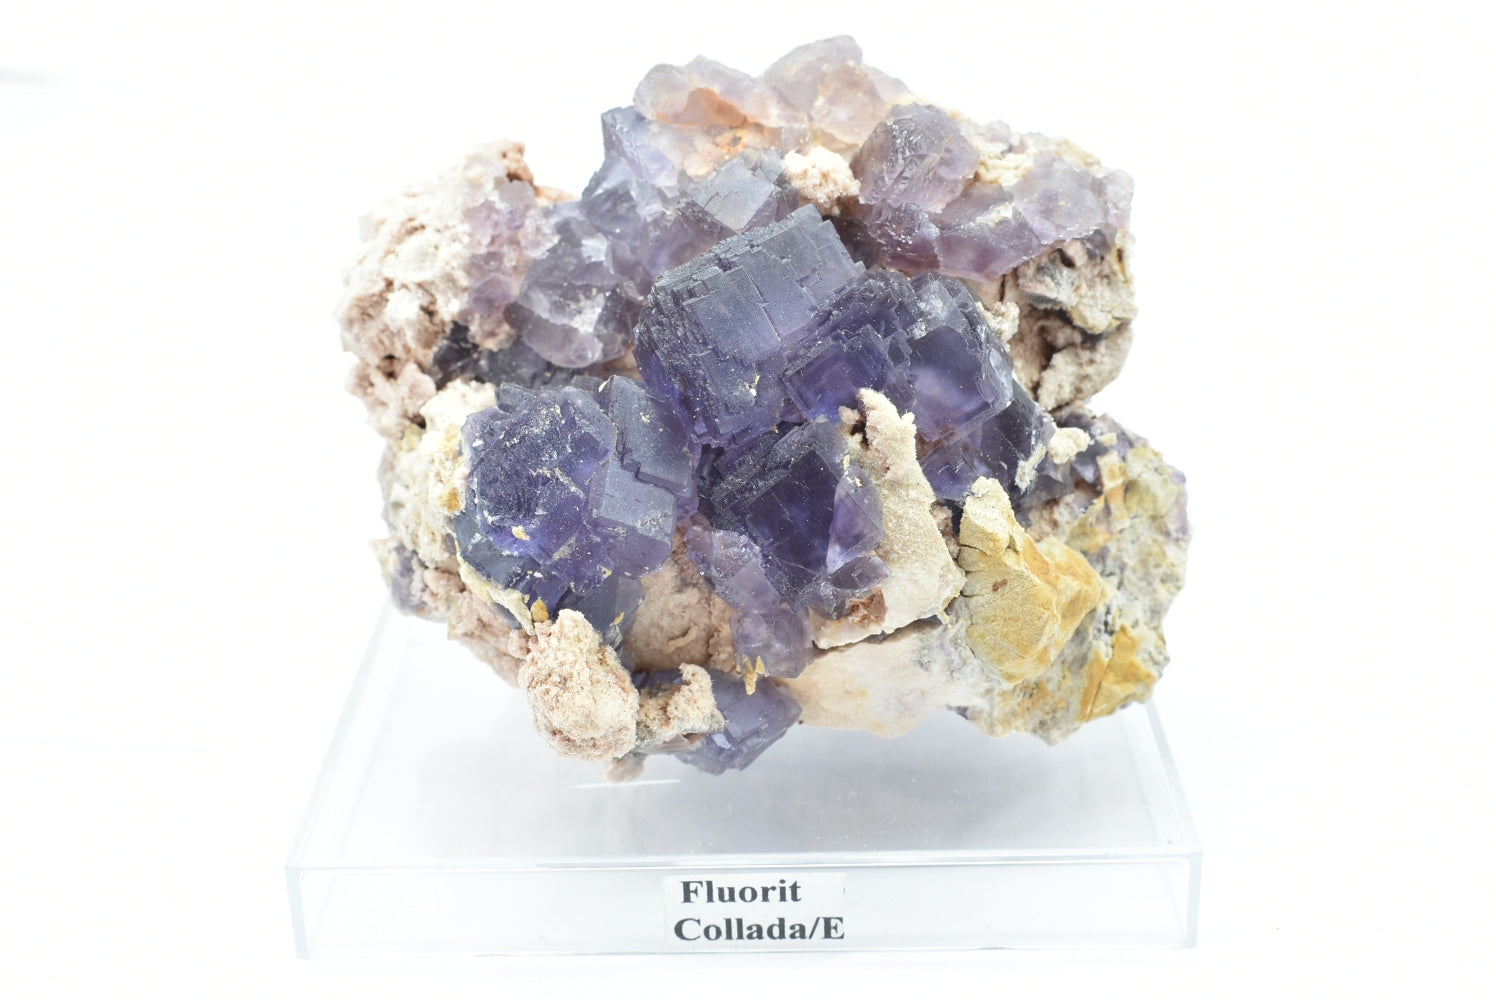 Fluorite from La Collada